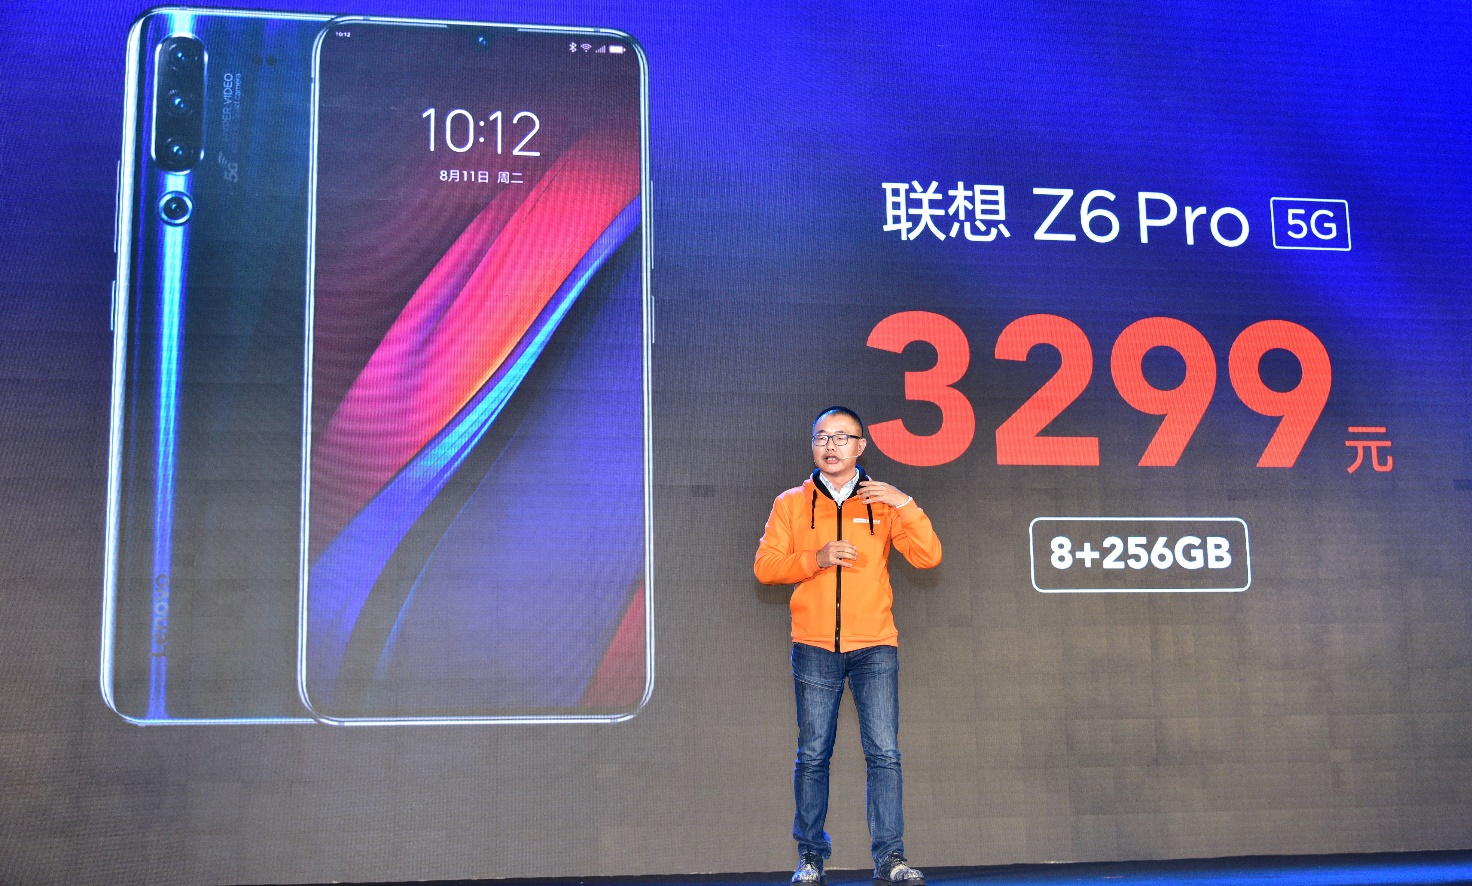 5G手机价格新低 联想Z6 Pro 5G版发布售价3299元